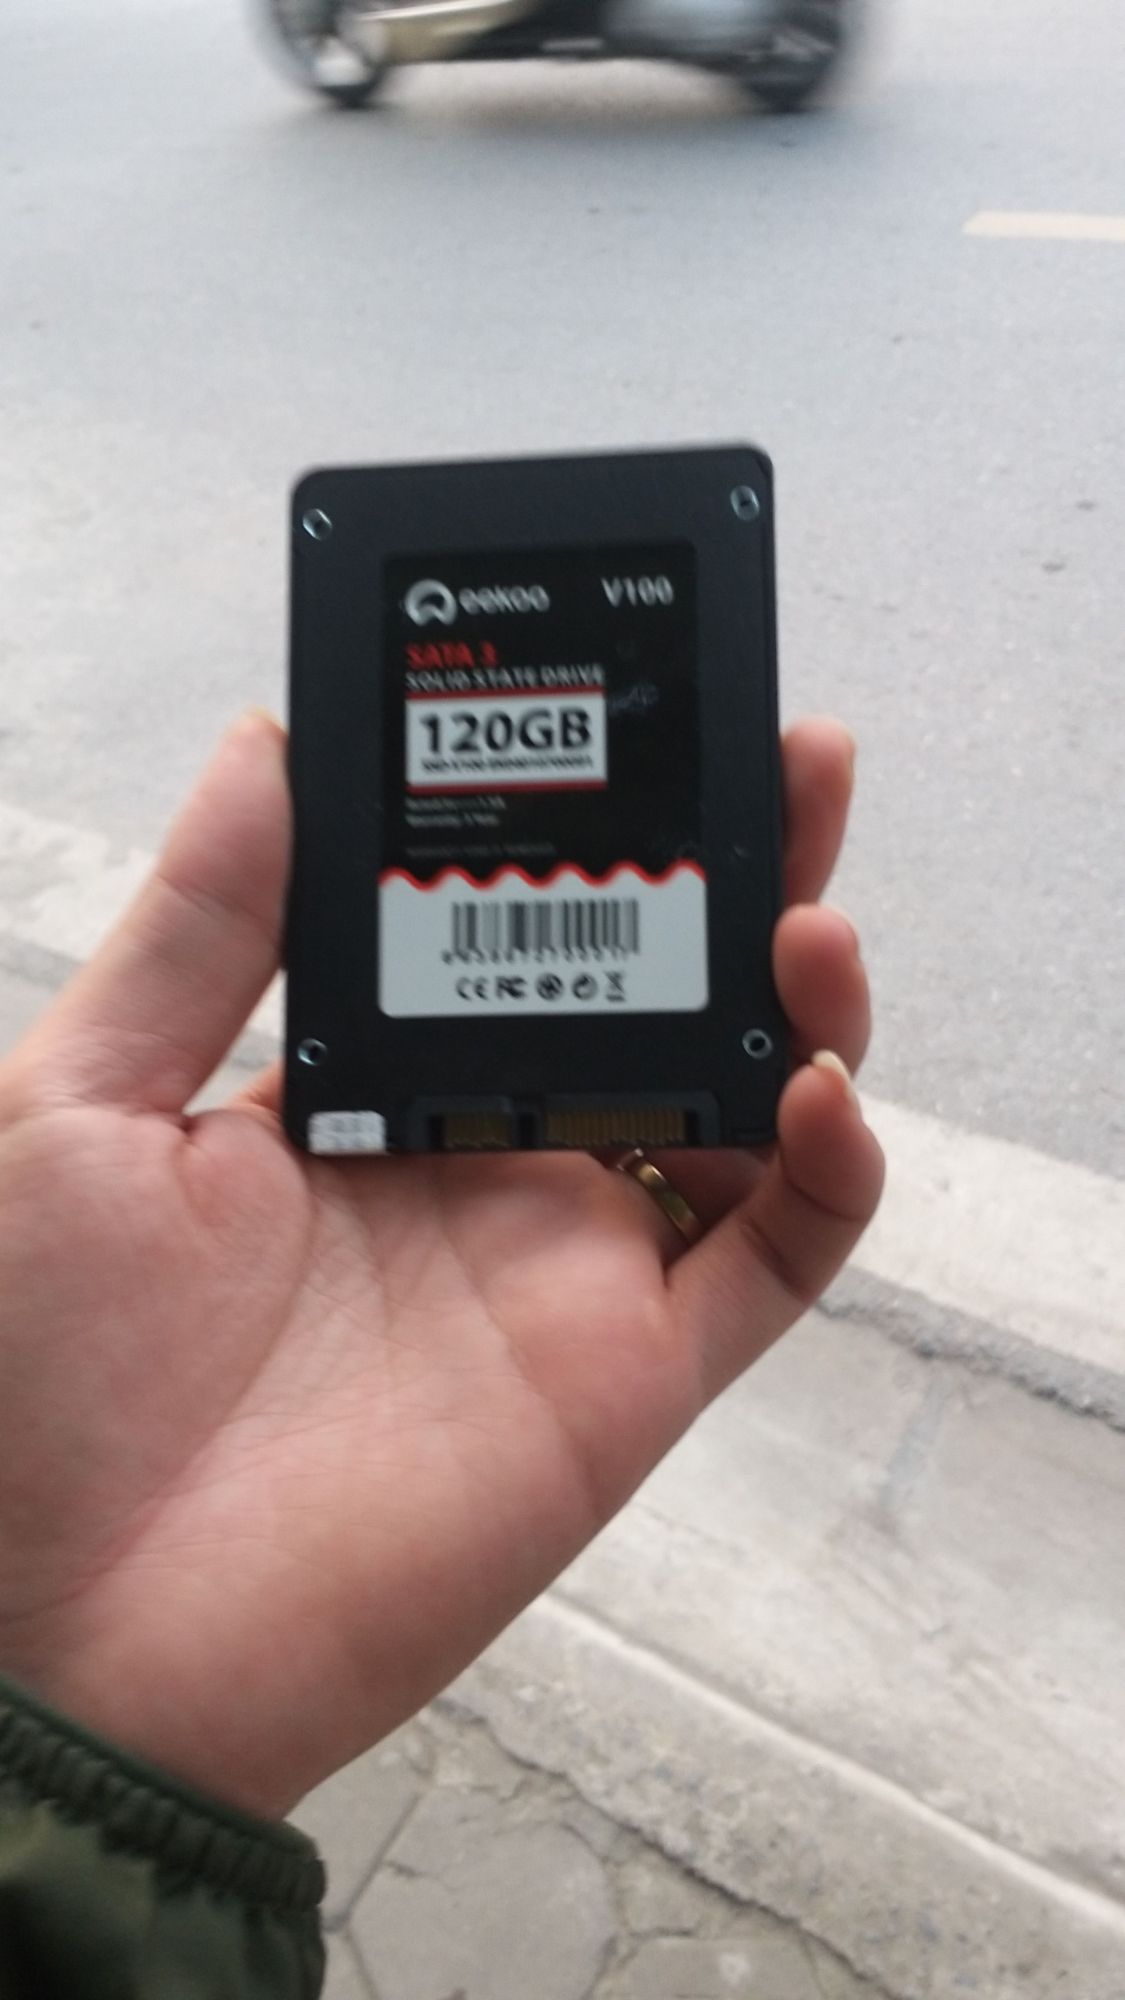 Ổ cứng SSD 120gb bảo hành 3 năm EEKOO 2.5 inch